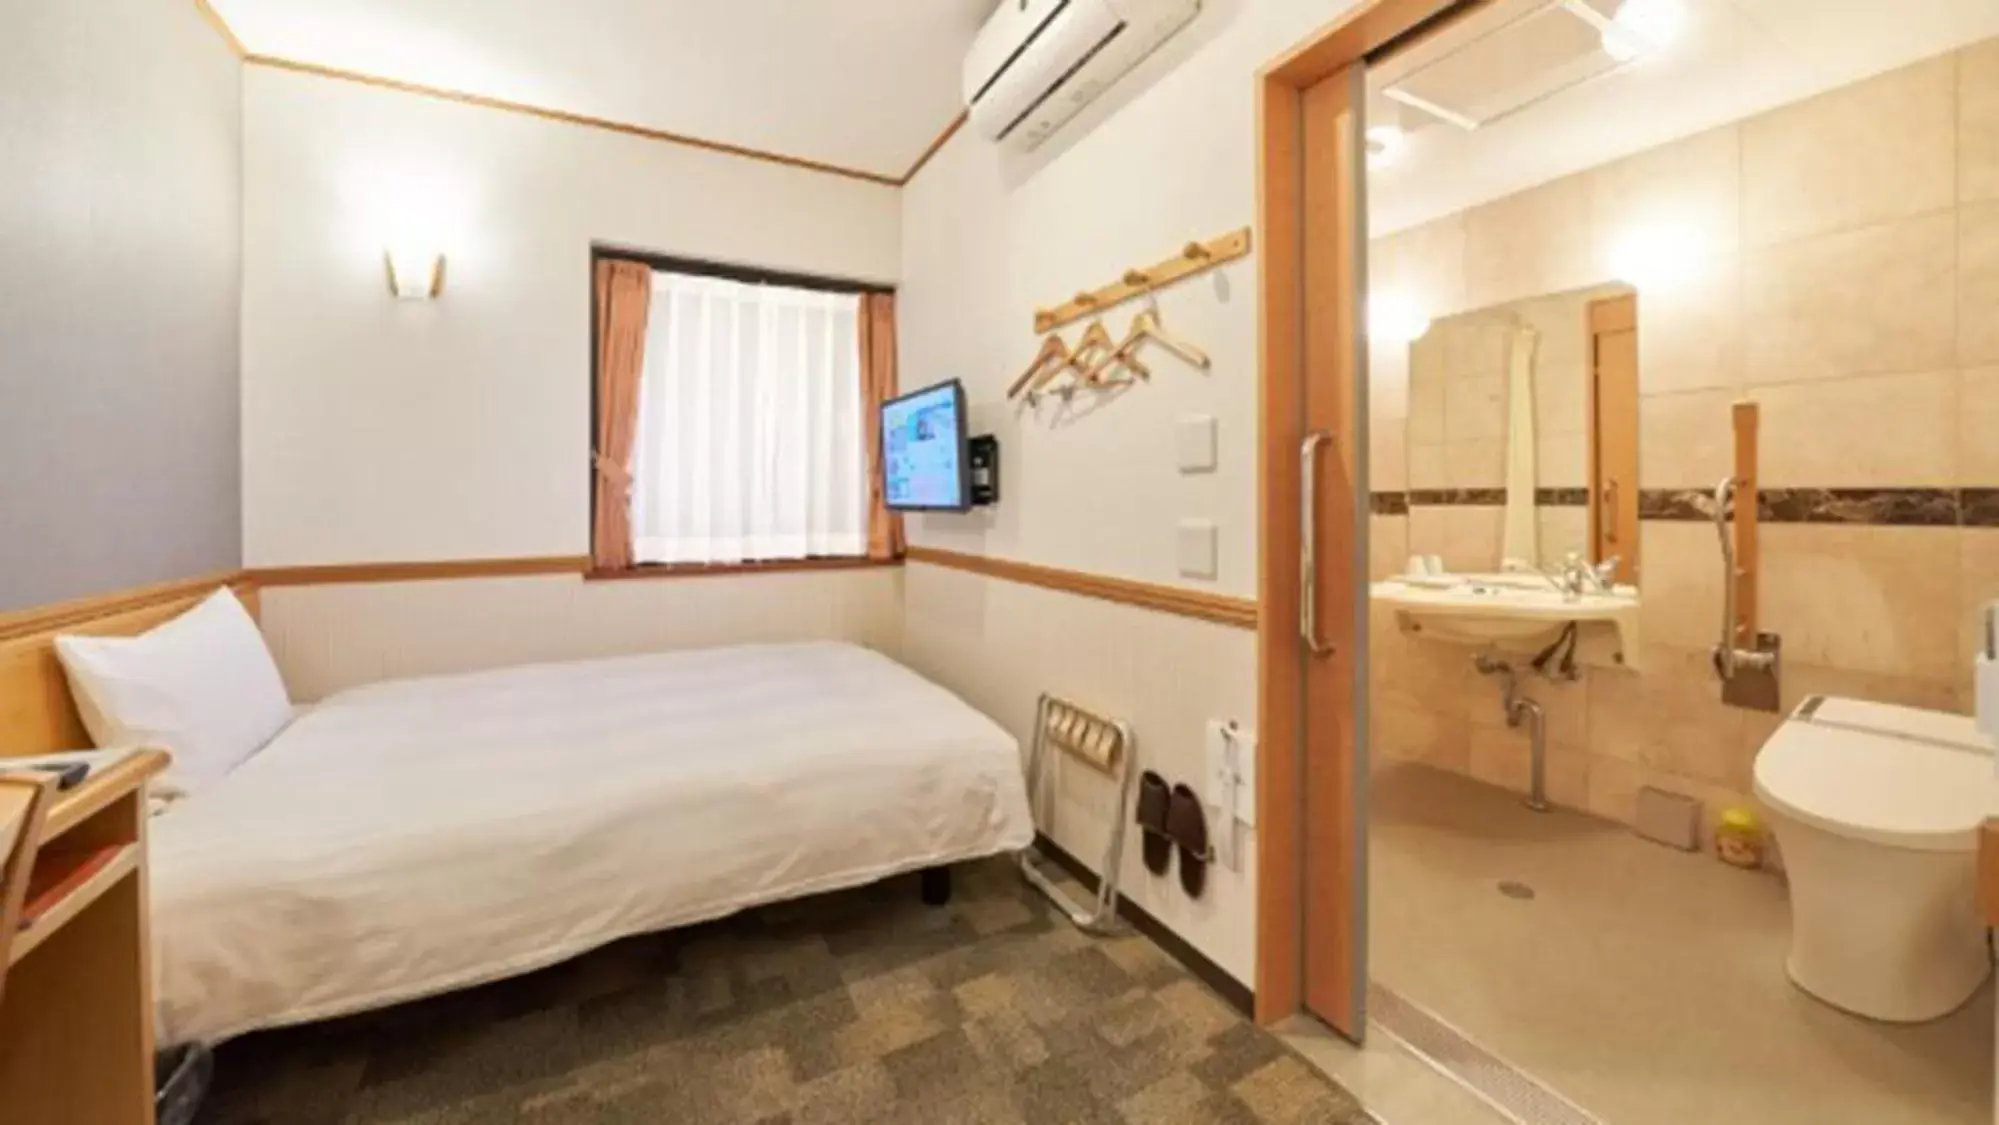 Bedroom, Bathroom in Toyoko Inn Nagoya Nishiki